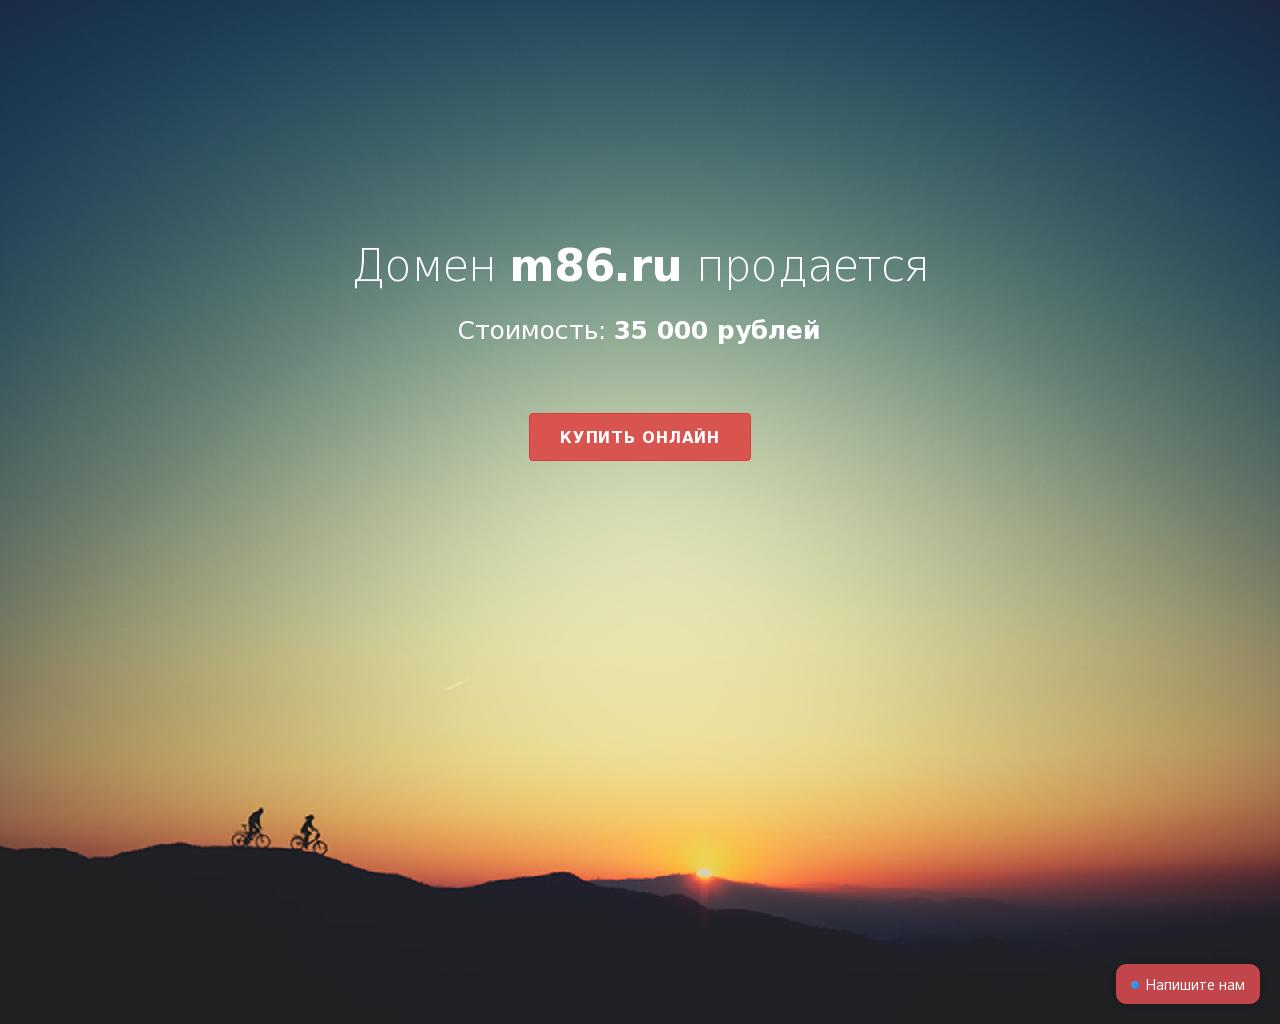 Изображение сайта m86.ru в разрешении 1280x1024